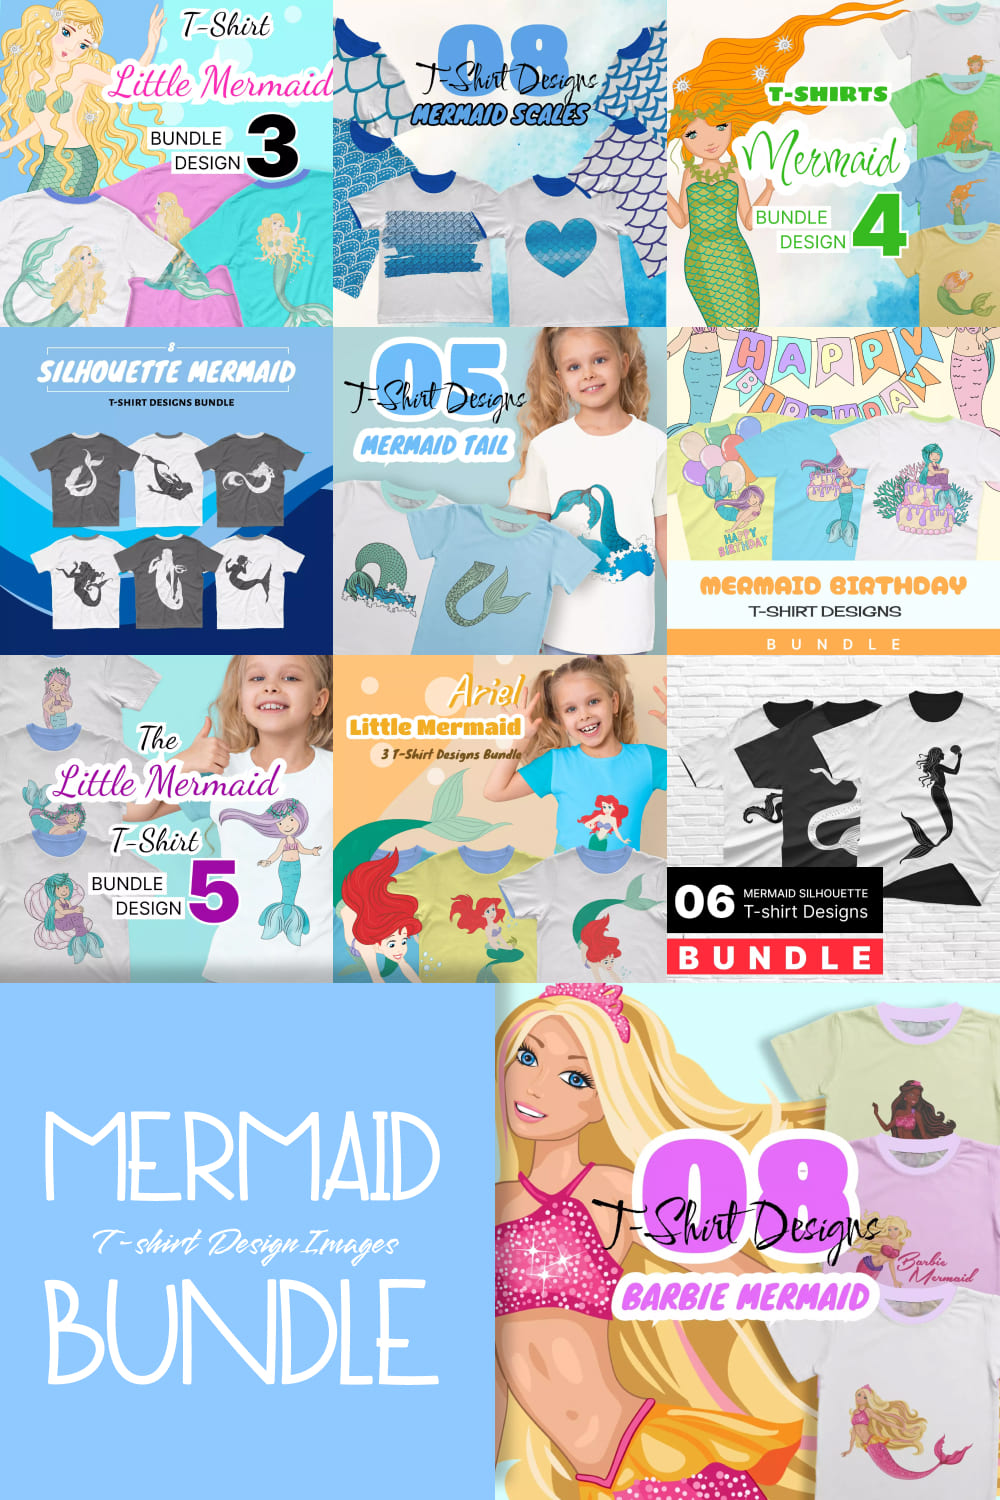 mermaid t shirt design images bundle pinterest 363